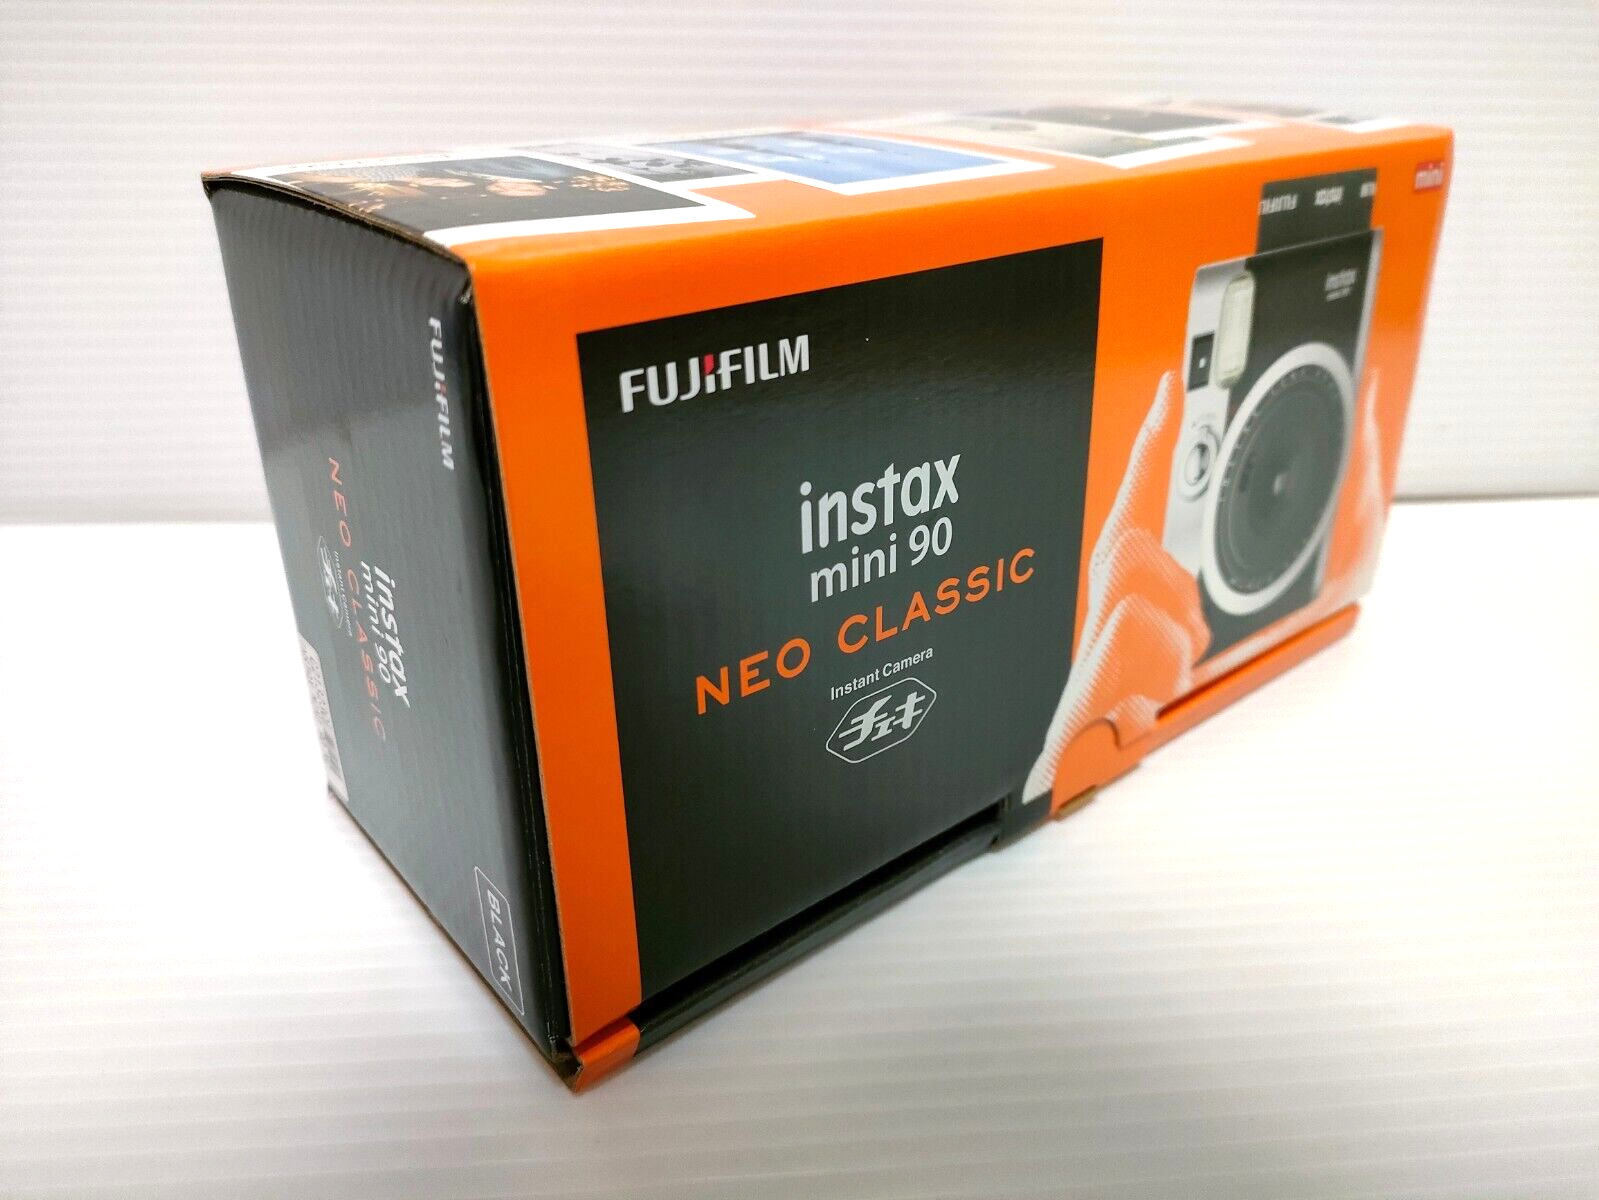 新品未使用FUJI FILM INSTAX MINI90 NEO CLASSIC フィルムカメラ カメラ 家電・スマホ・カメラ 【税込】